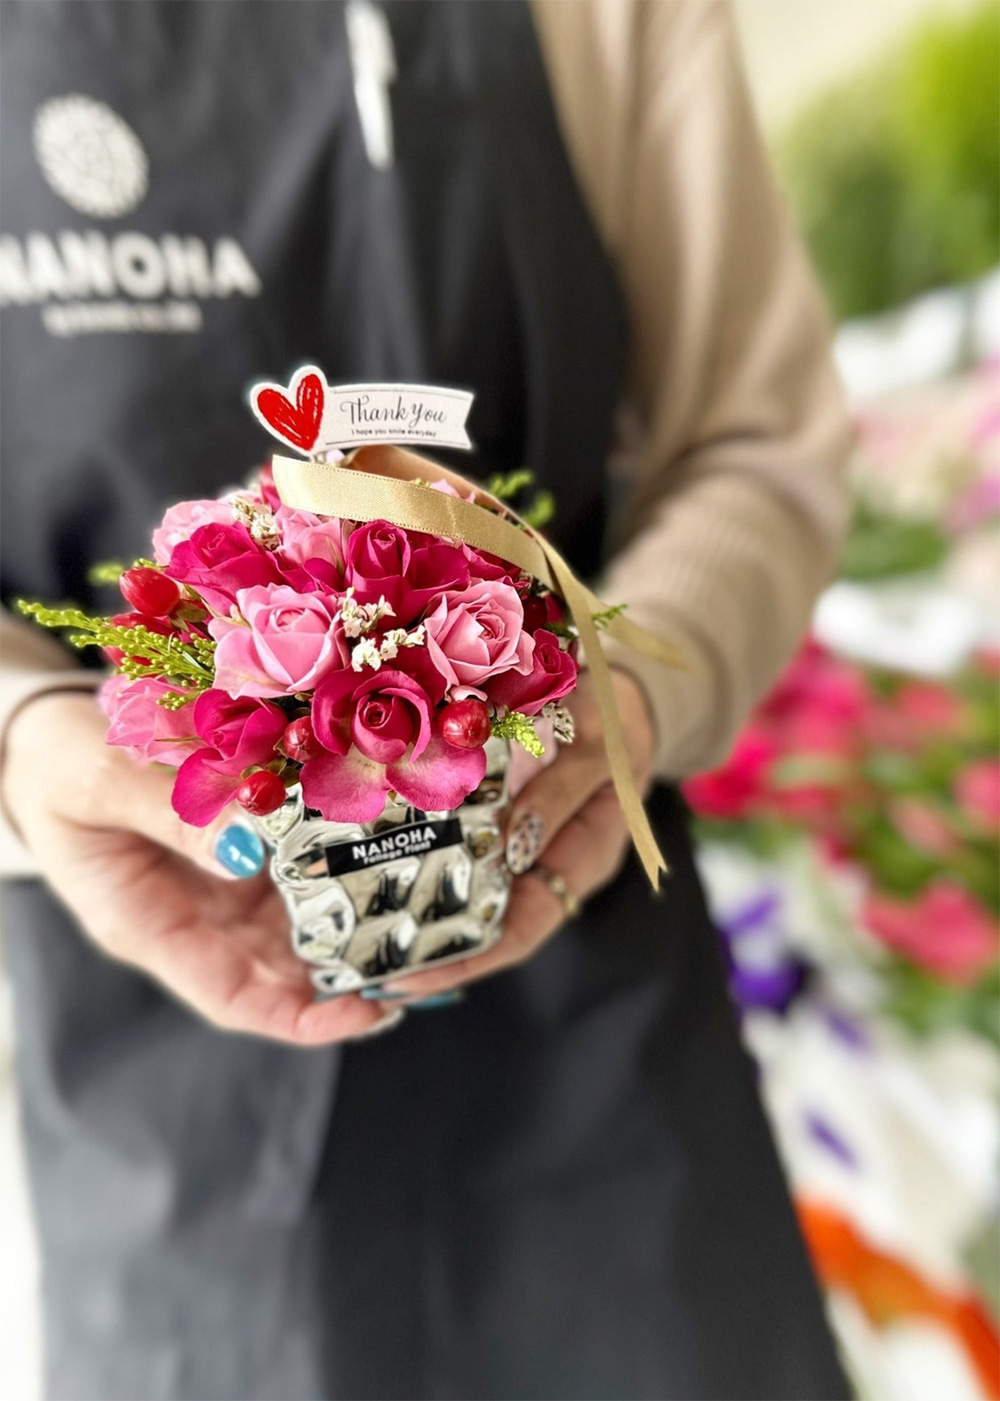 NANOHA堅粕店では切花・アレジメント・ミニブーケもご用意しております。